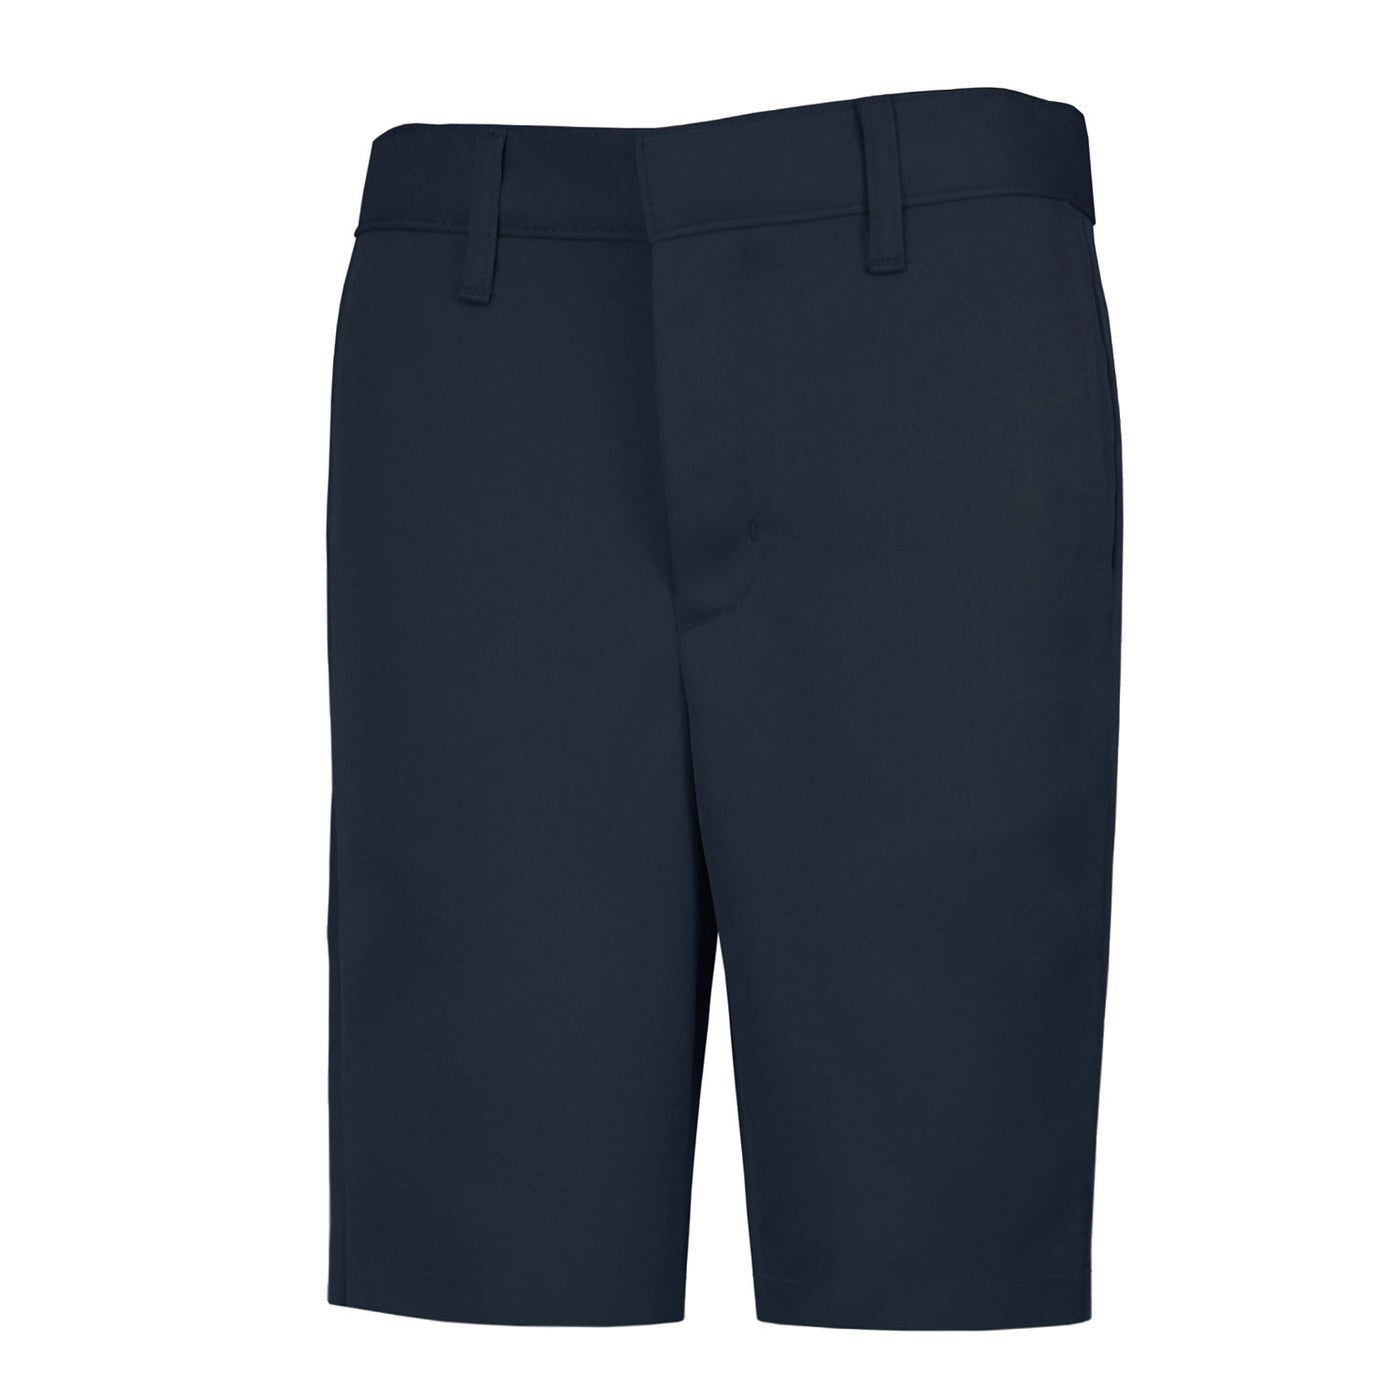 Navy youth shorts